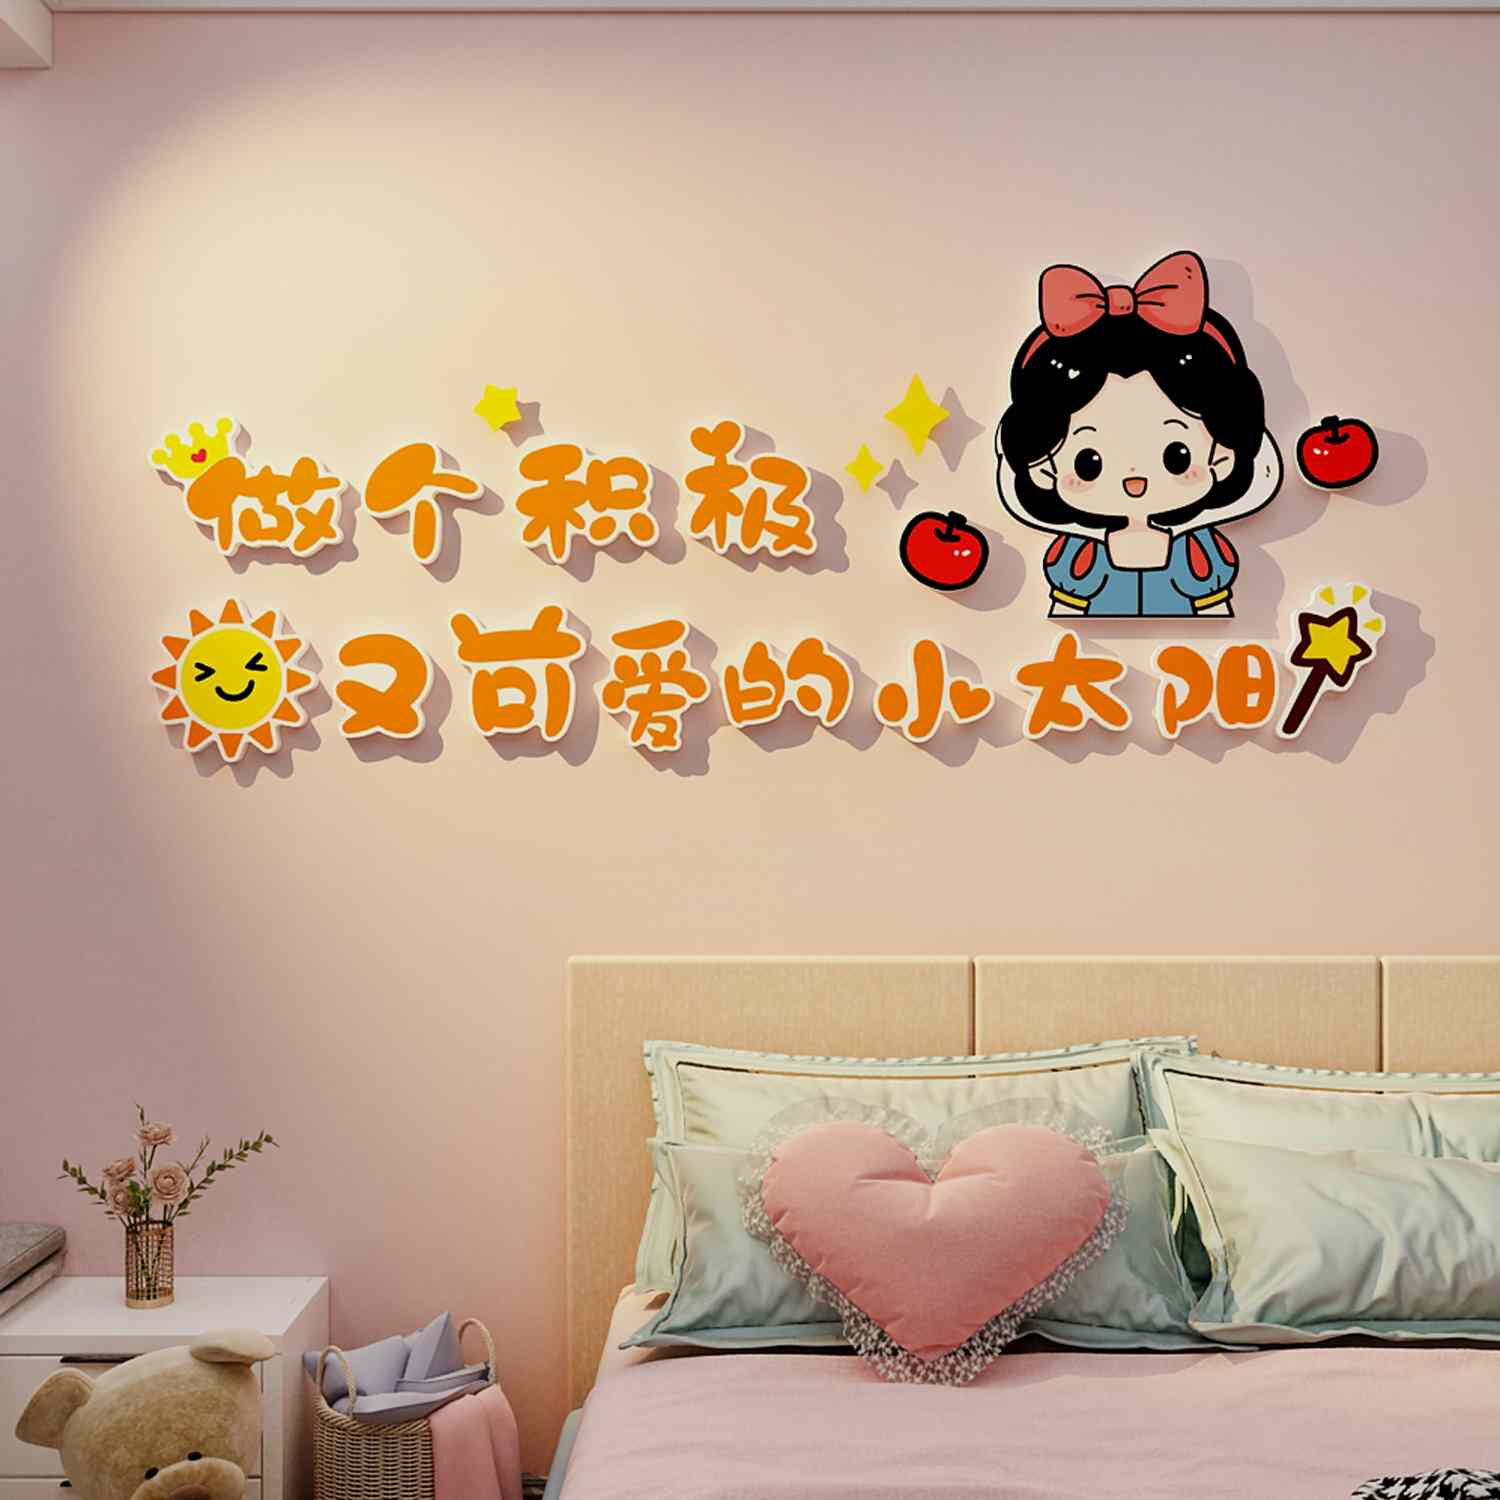 网红儿童房间布置墙面装饰少女孩公主玩具卧室床头背景卡通贴纸画